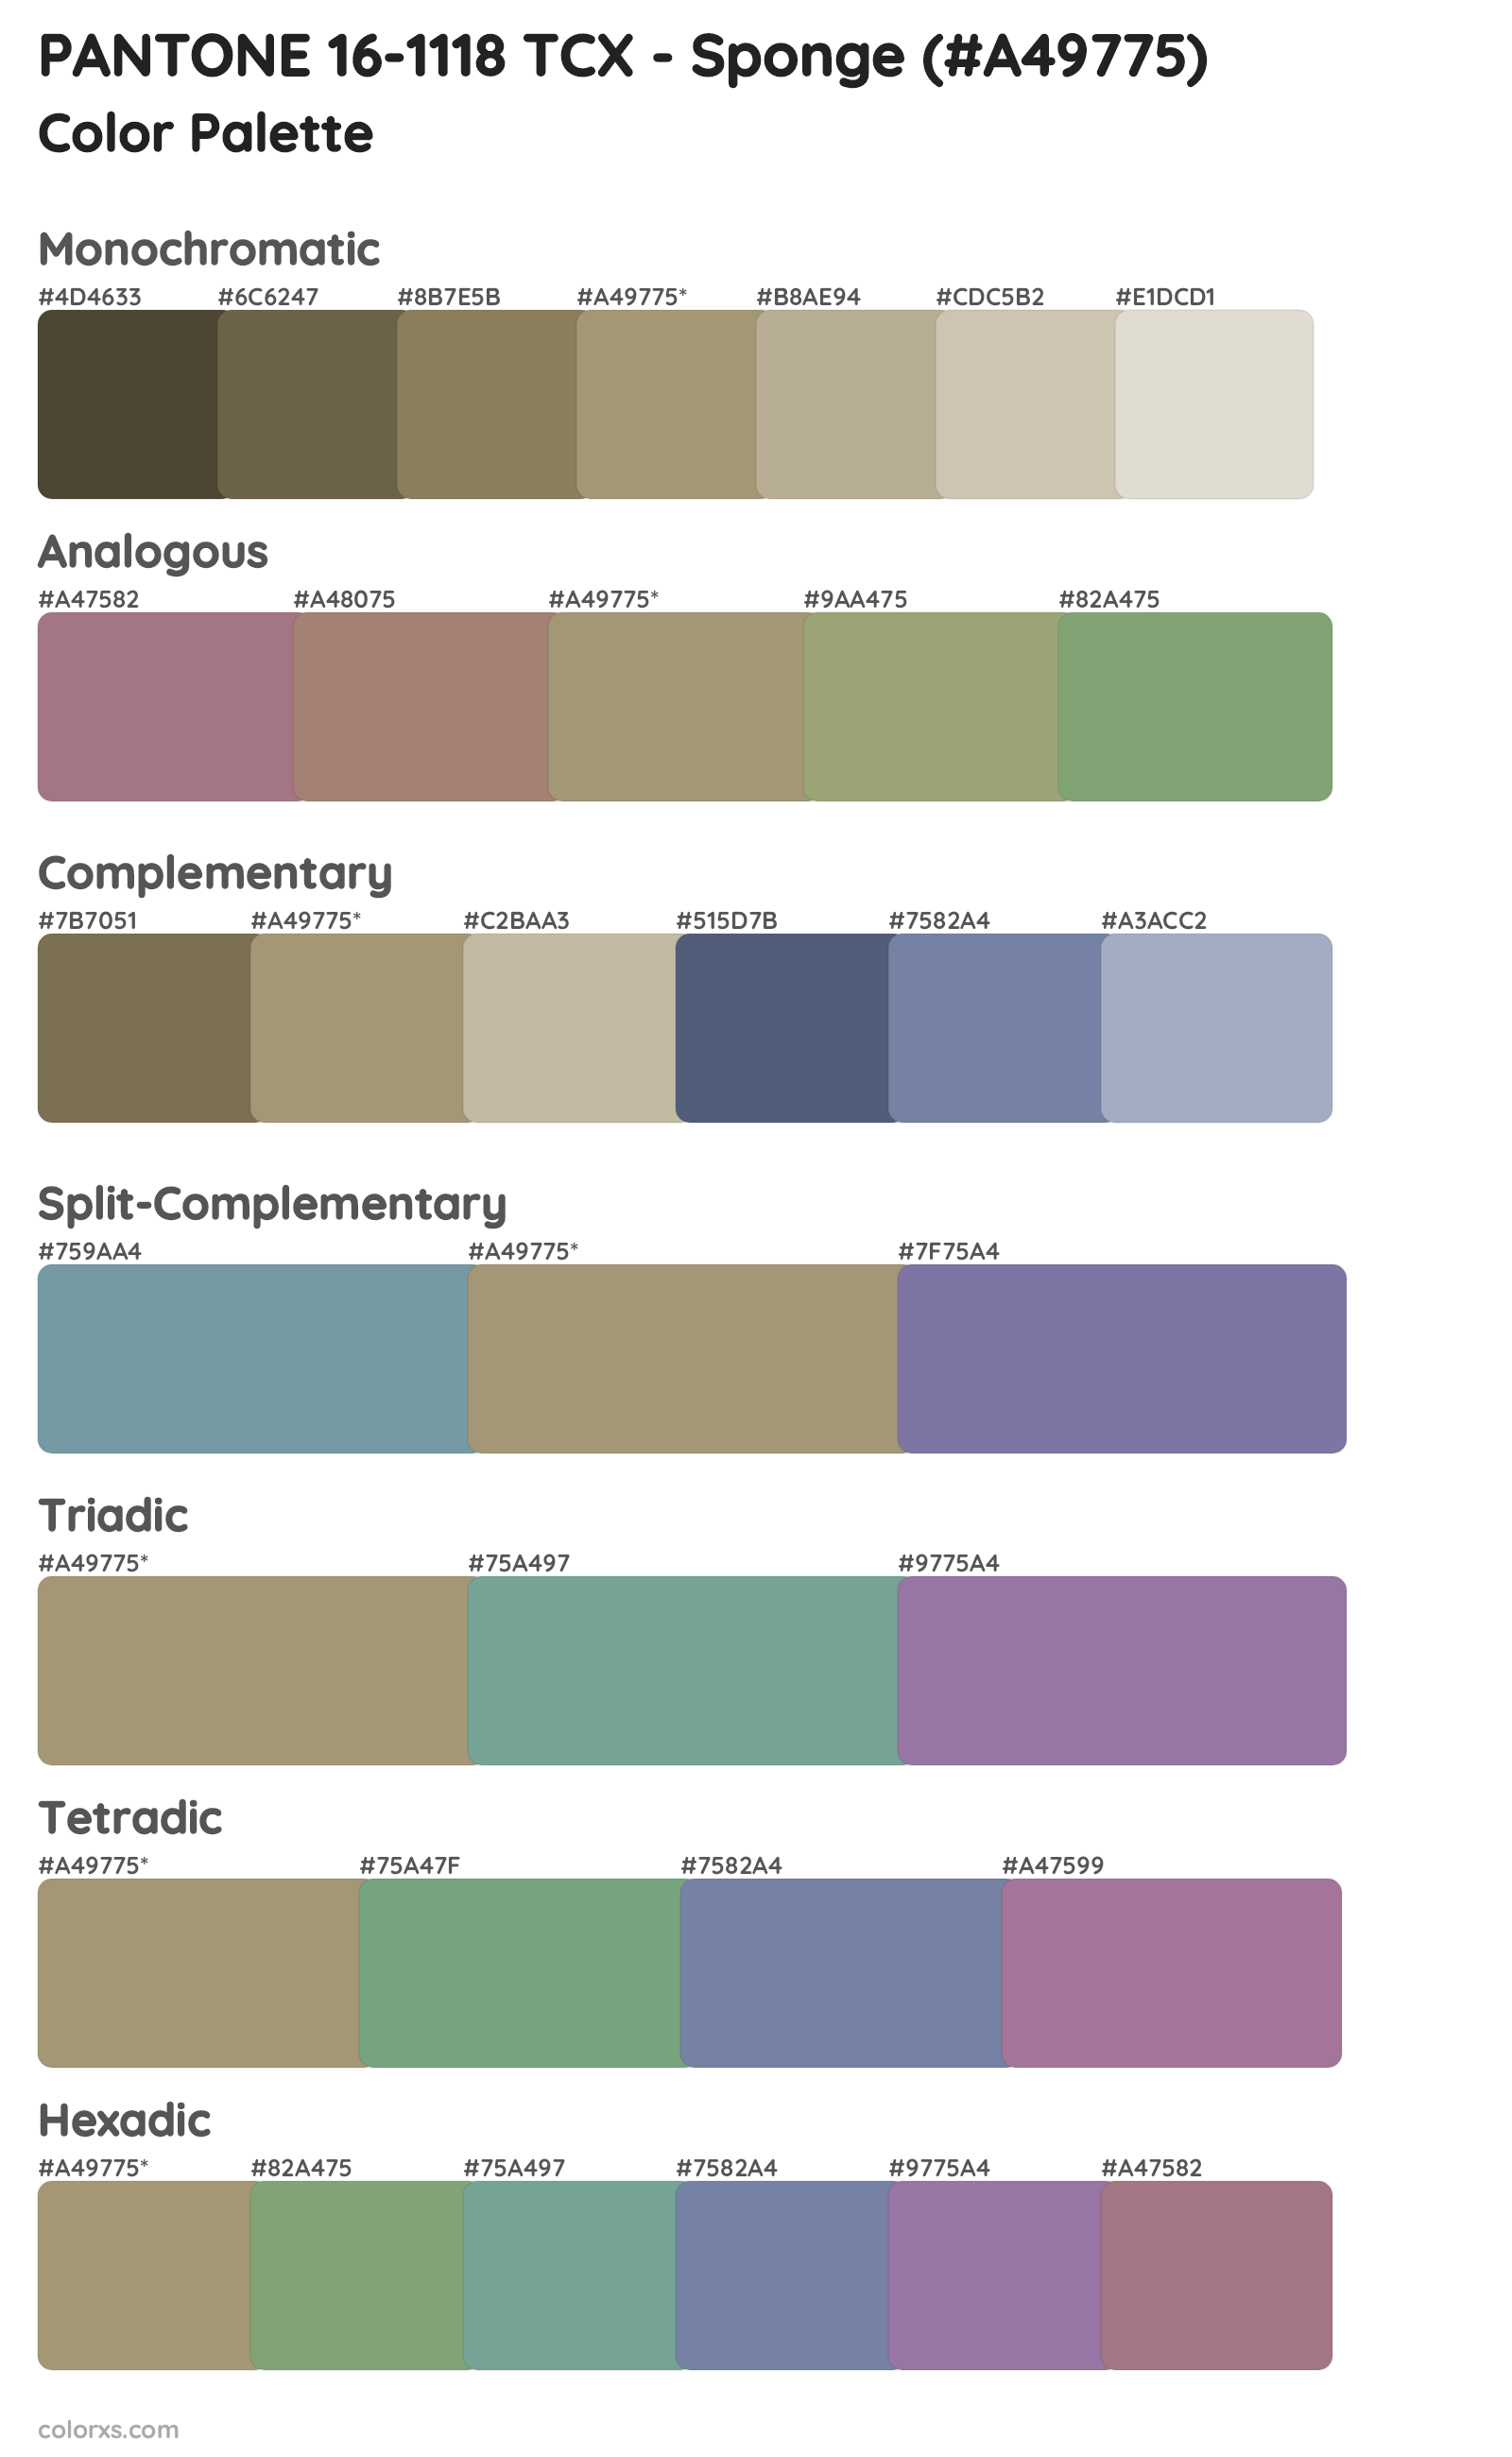 PANTONE 16-1118 TCX - Sponge Color Scheme Palettes